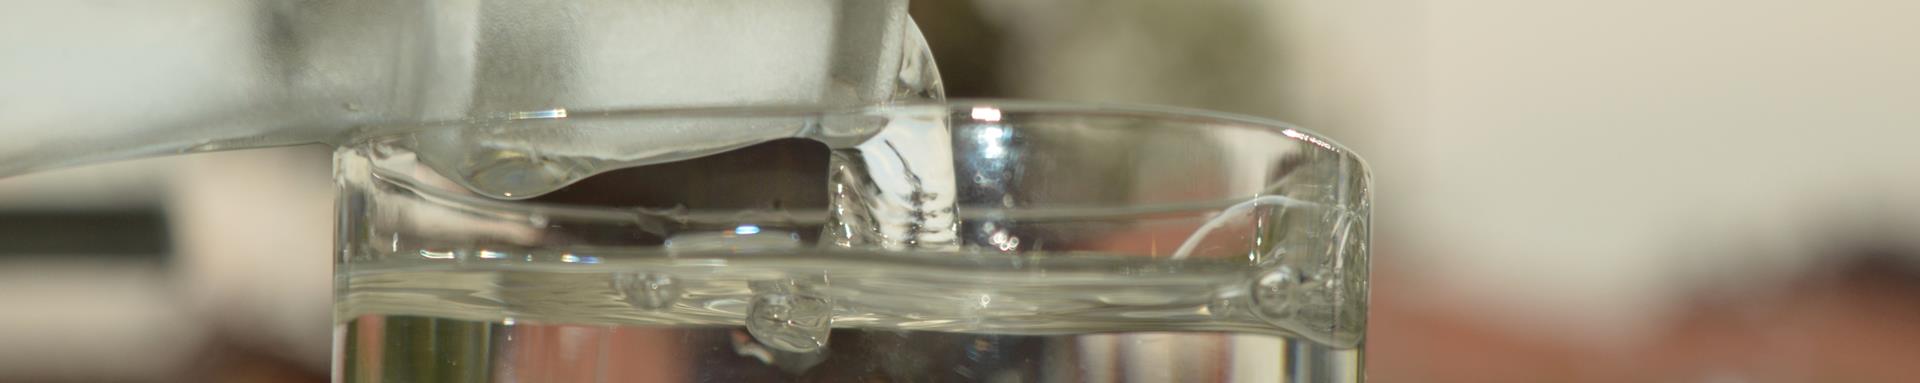 Et nærbillede af koldt postevand der bliver hældt op fra en flaske til et glas